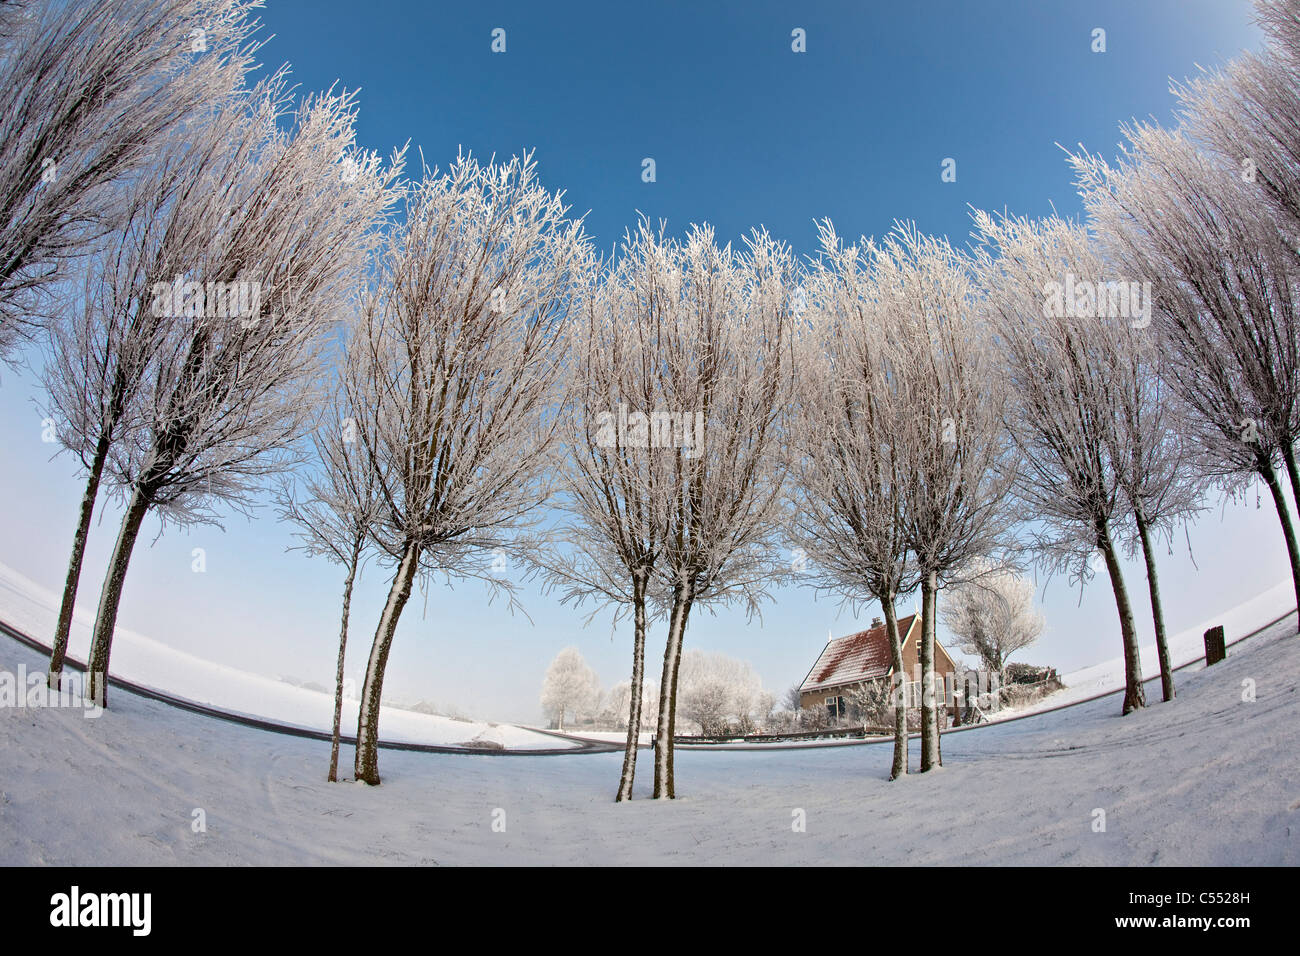 Die Niederlande, Ferwoude, Land weg und Bäume im Schnee und Frost. Fischaugenobjektiv. Stockfoto